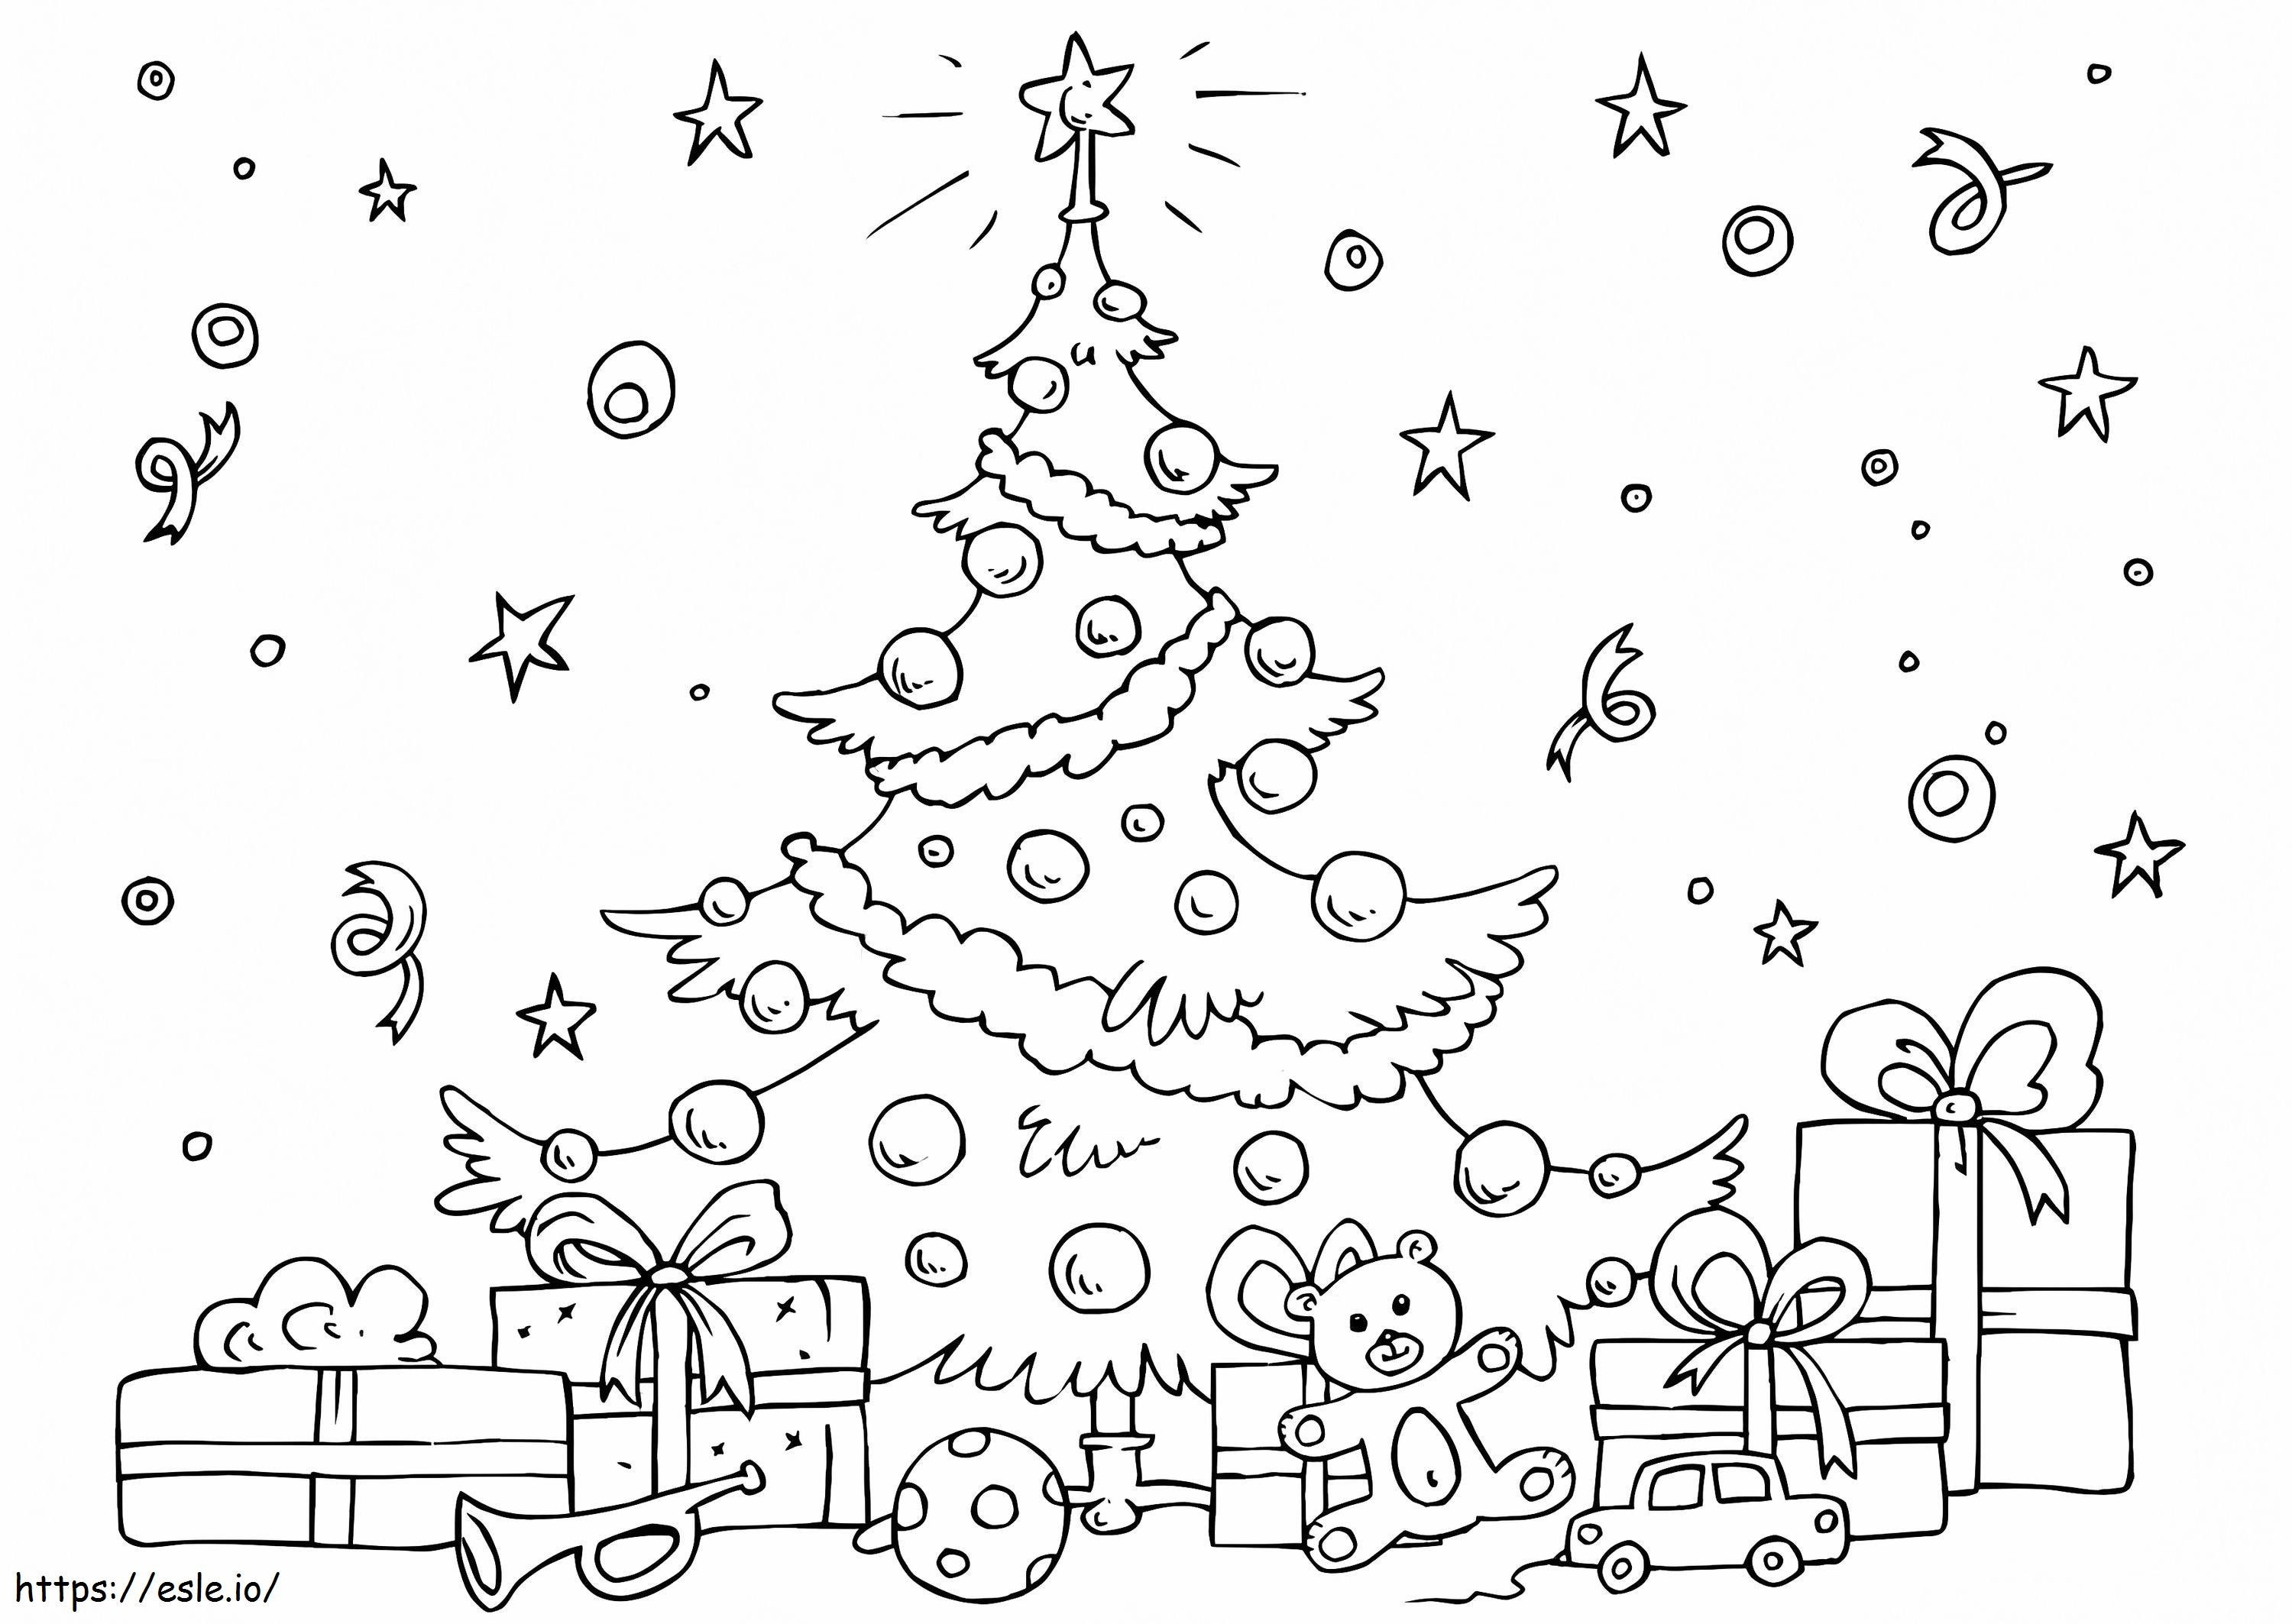 Hediye Kutuları Ve Oyuncaklarla Noel Ağacı boyama